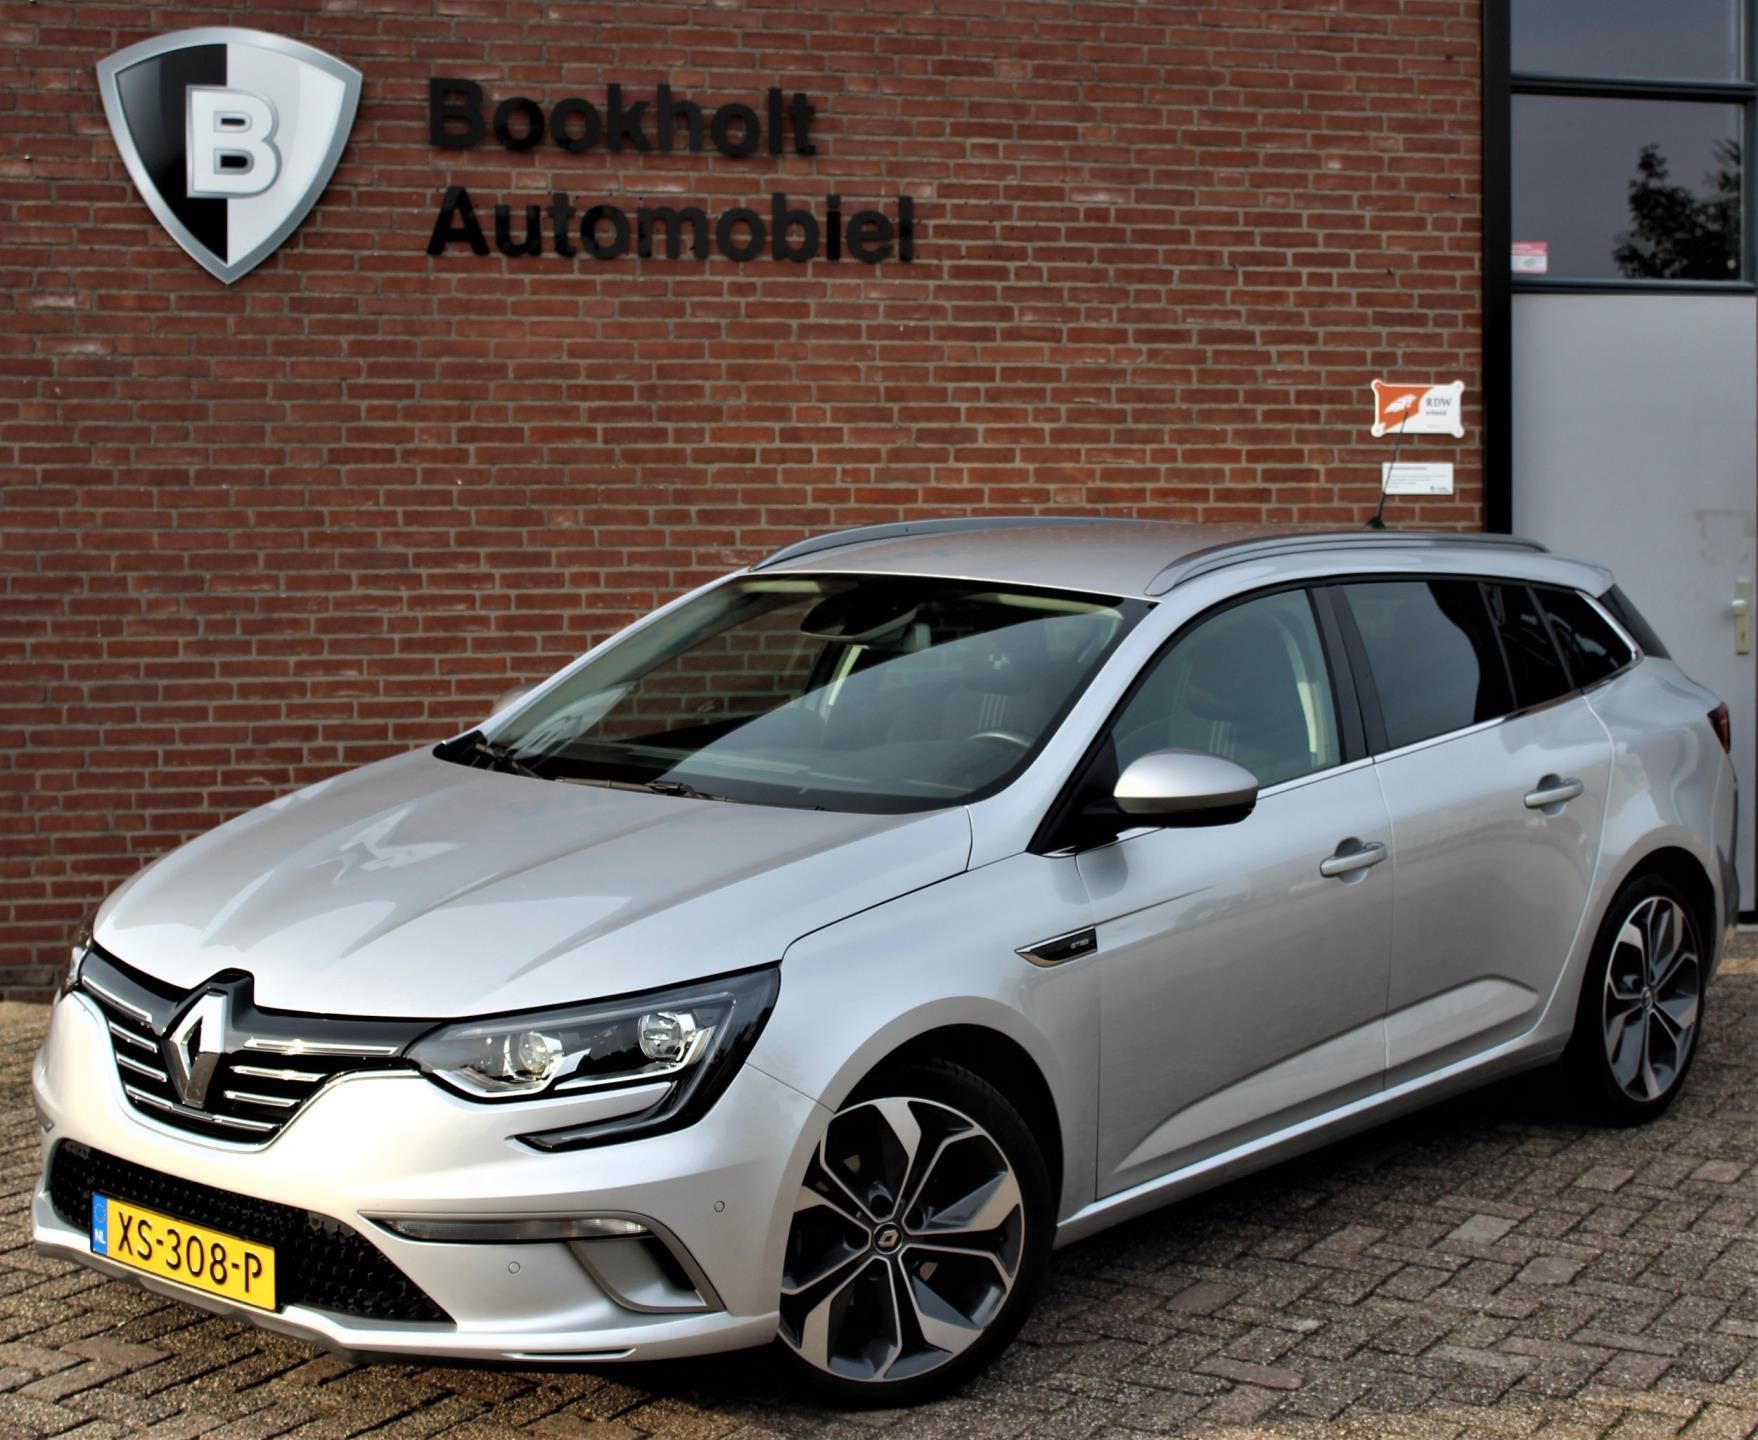 Voorschrijven omhelzing heilige Renault Mégane Estate - 130 GT- line Benzine uit 2018 -  www.bookholt-automobiel.nl